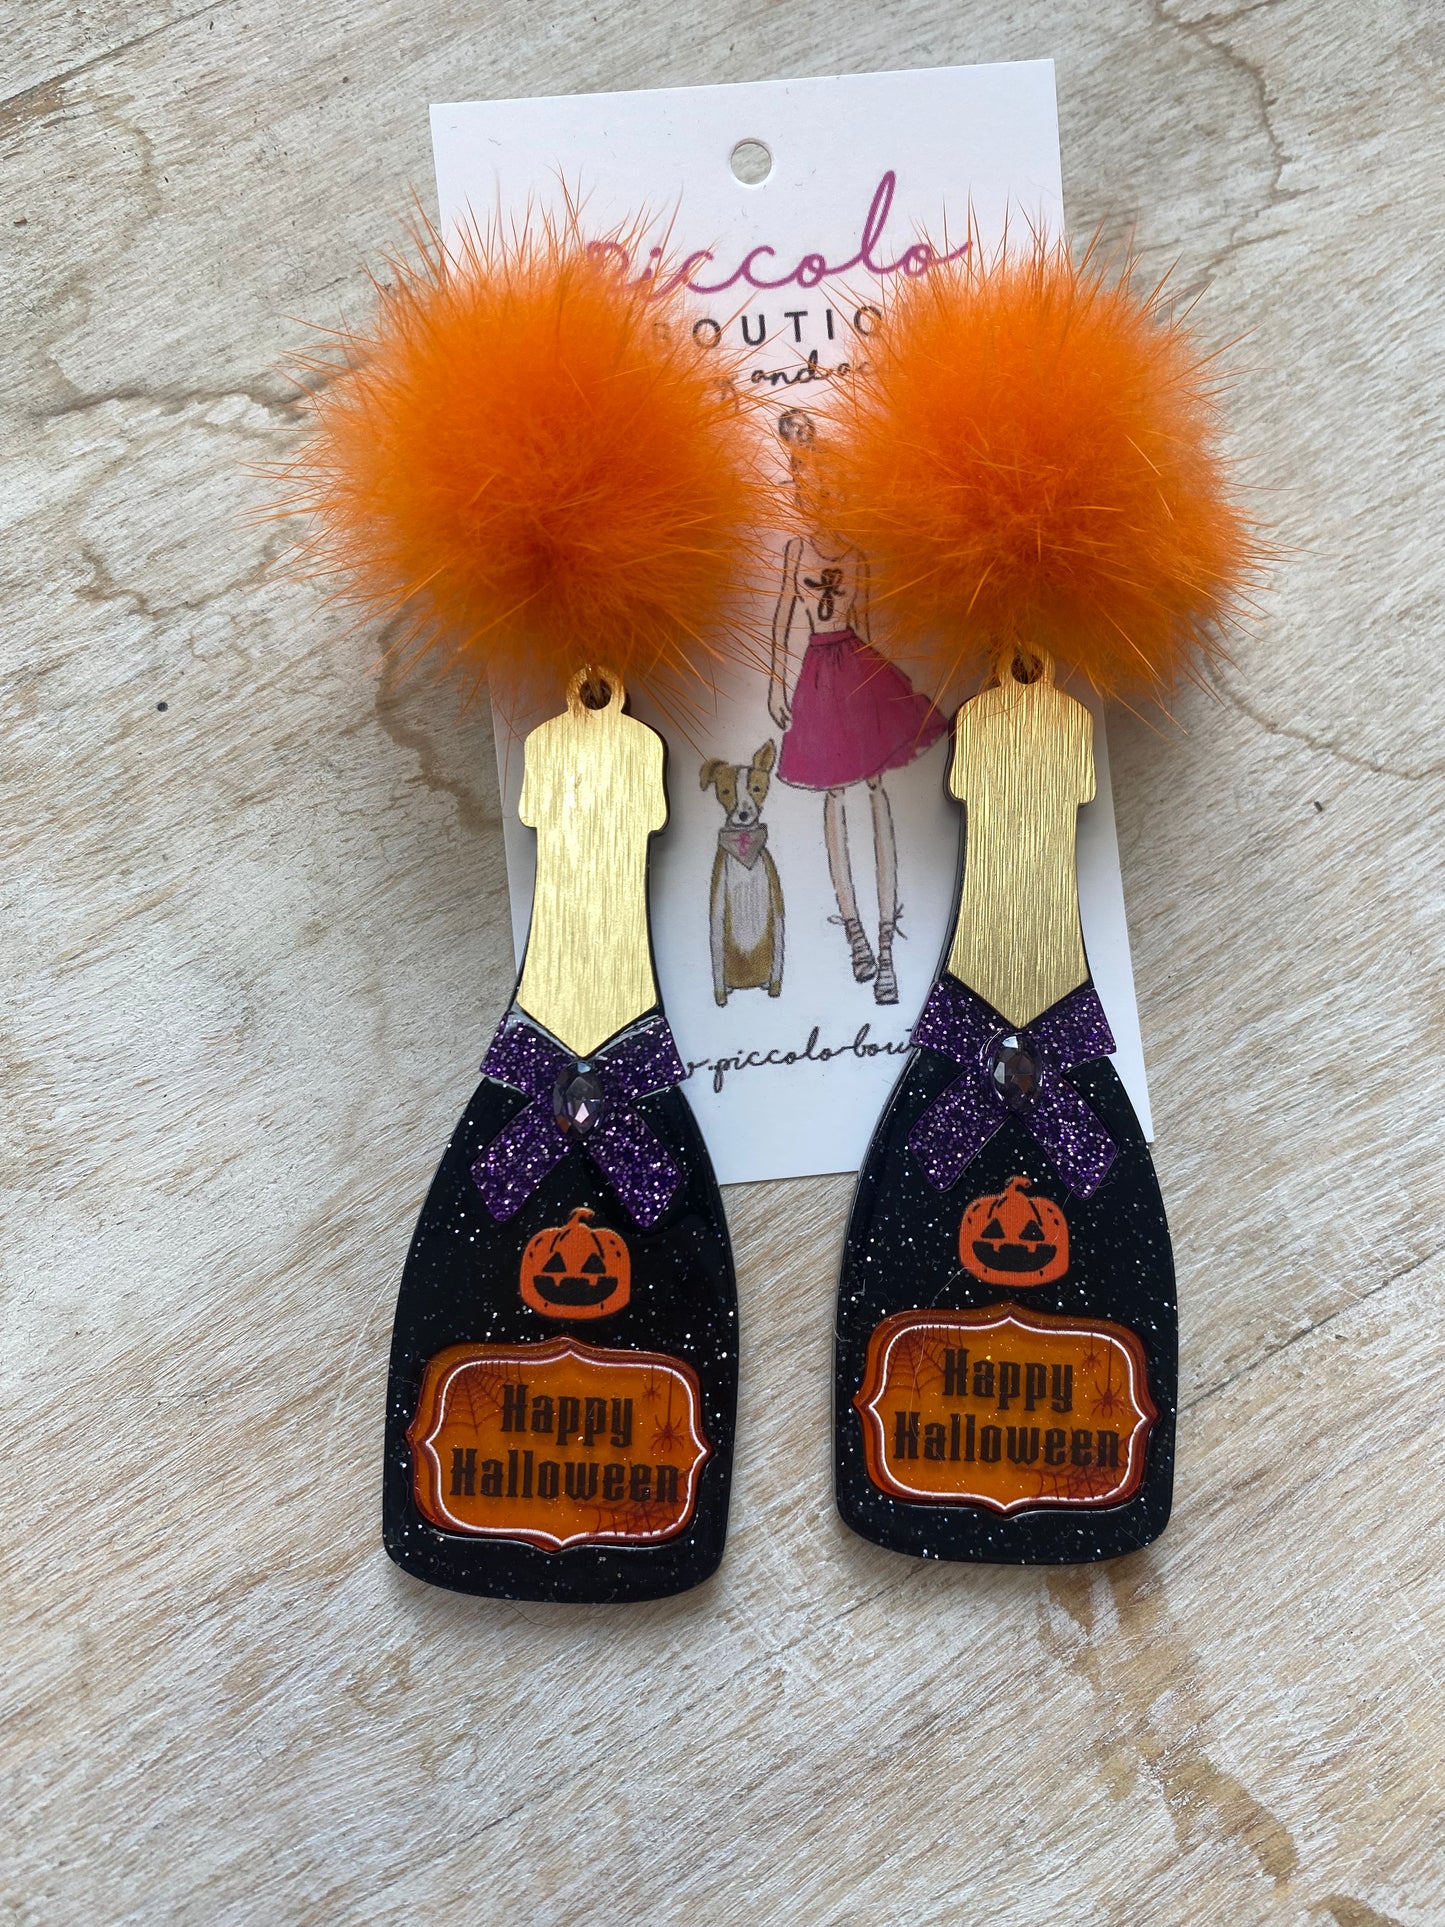 Happy Halloween Bottle Earrings